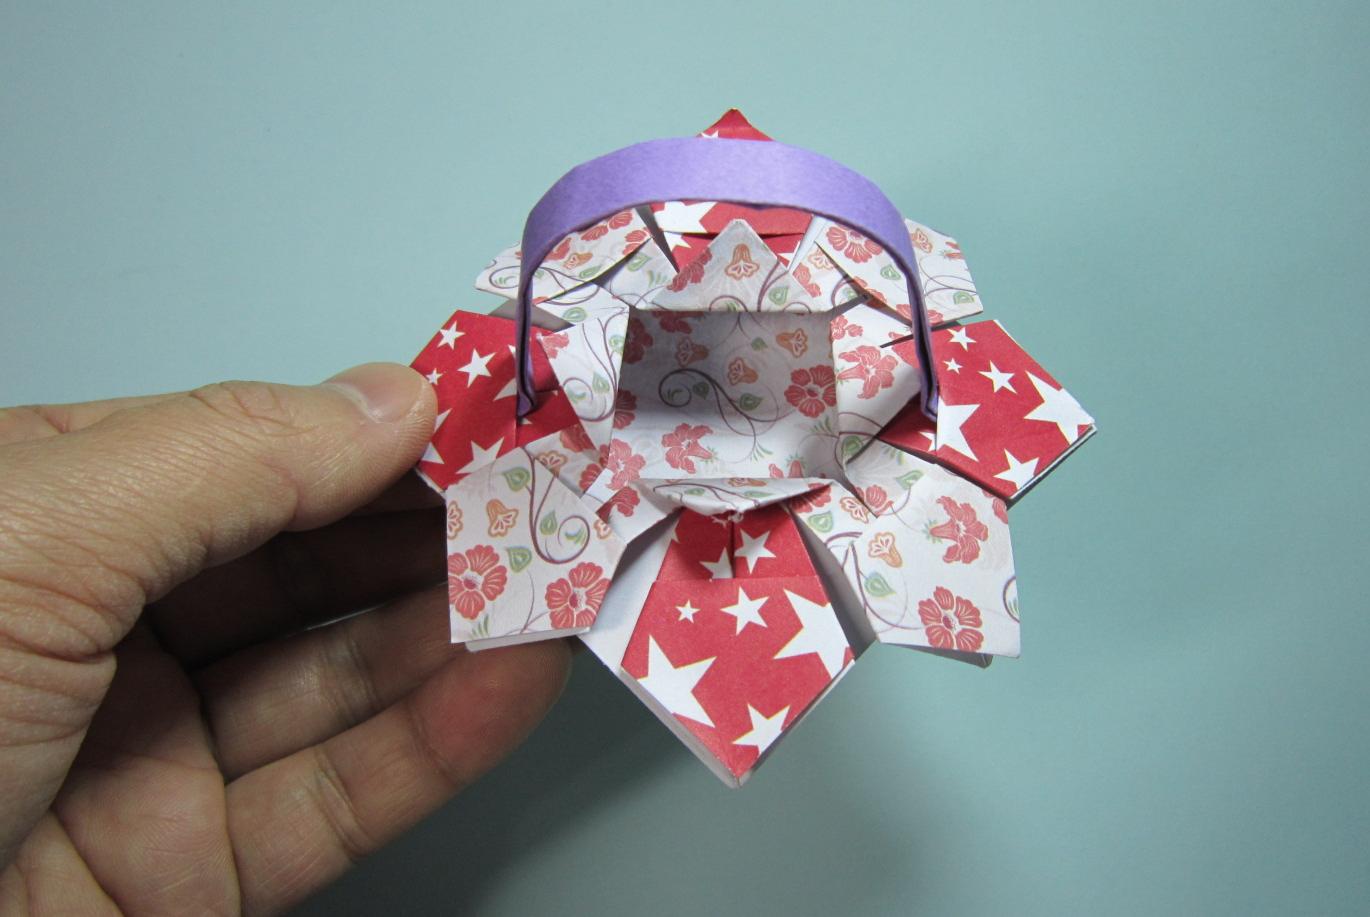 魔术玫瑰折纸教程 - 知乎